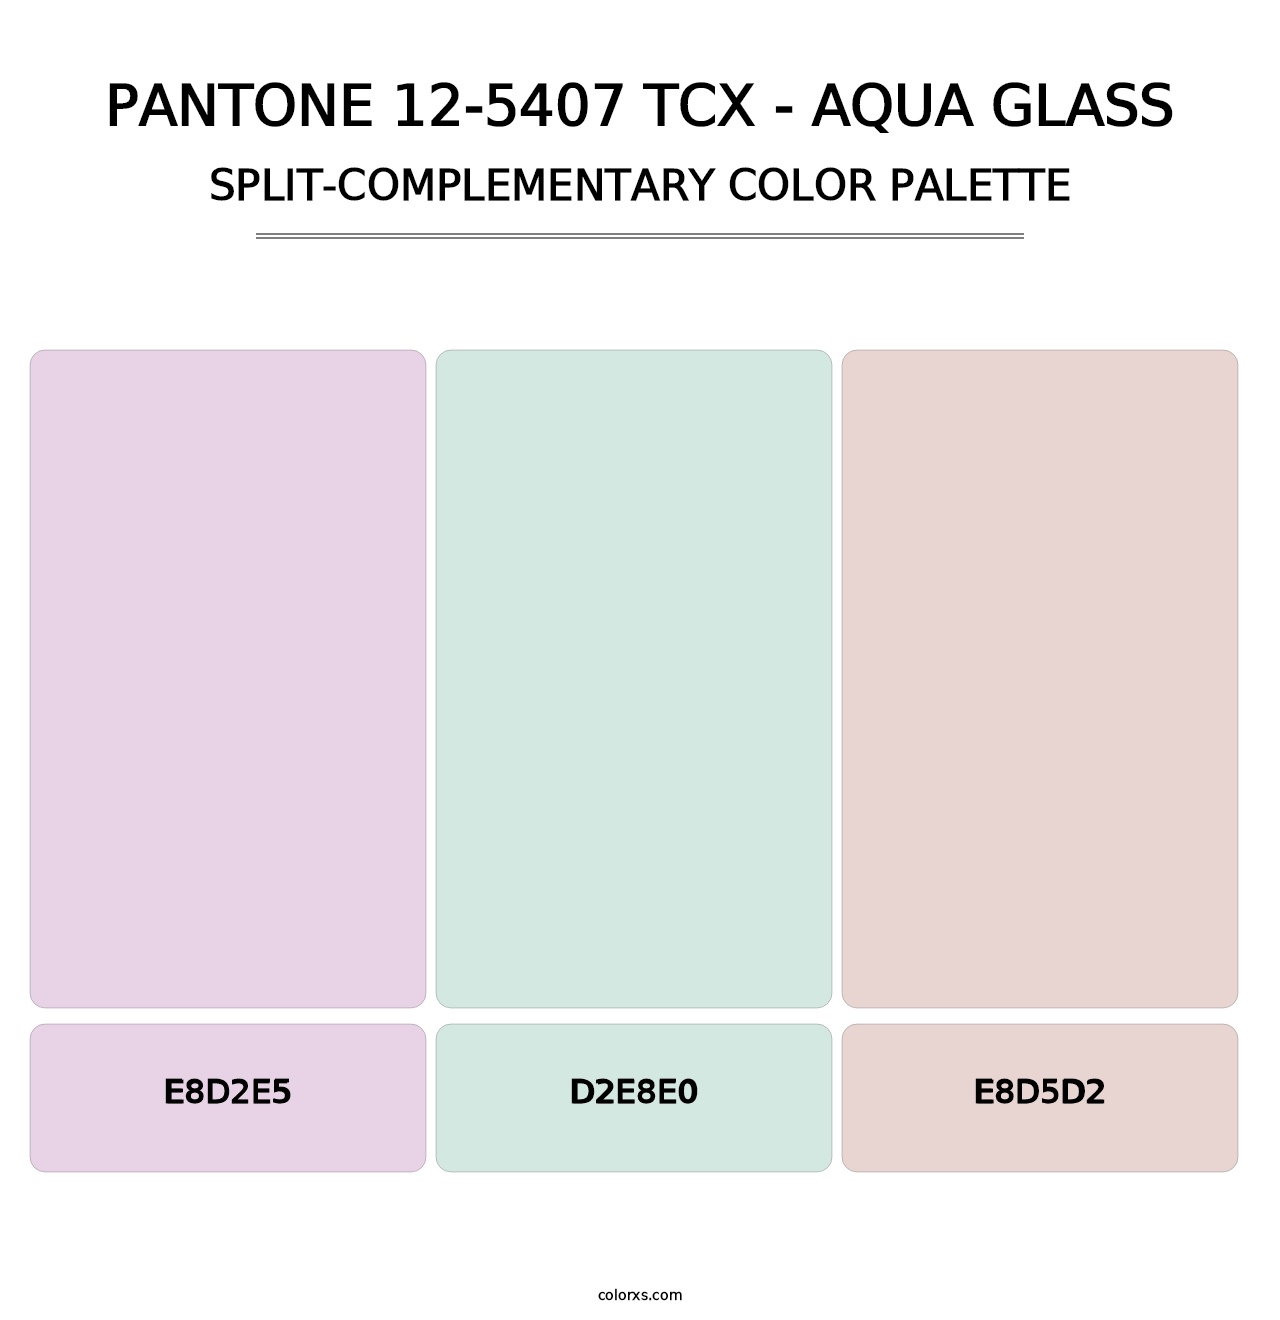 PANTONE 12-5407 TCX - Aqua Glass - Split-Complementary Color Palette